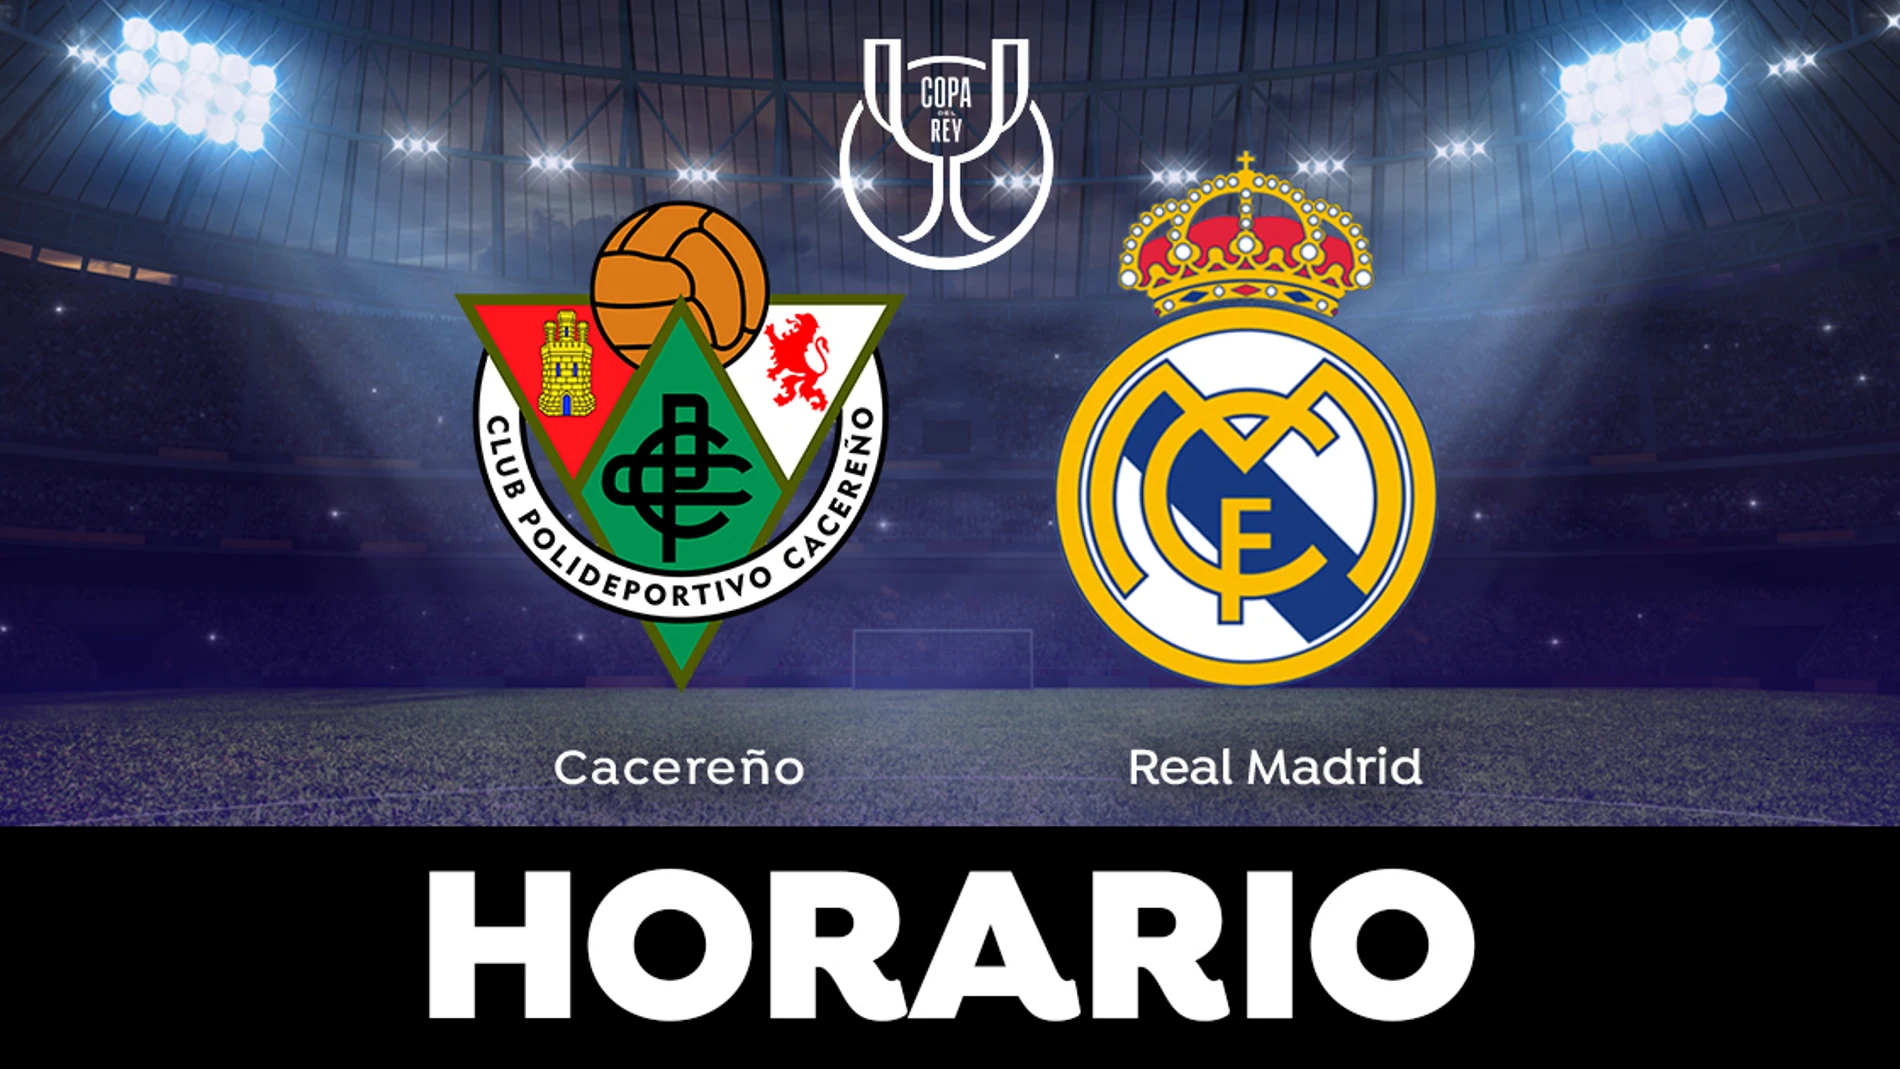 Cacereño - Real Madrid: Horario el partido de Copa del Rey en directo